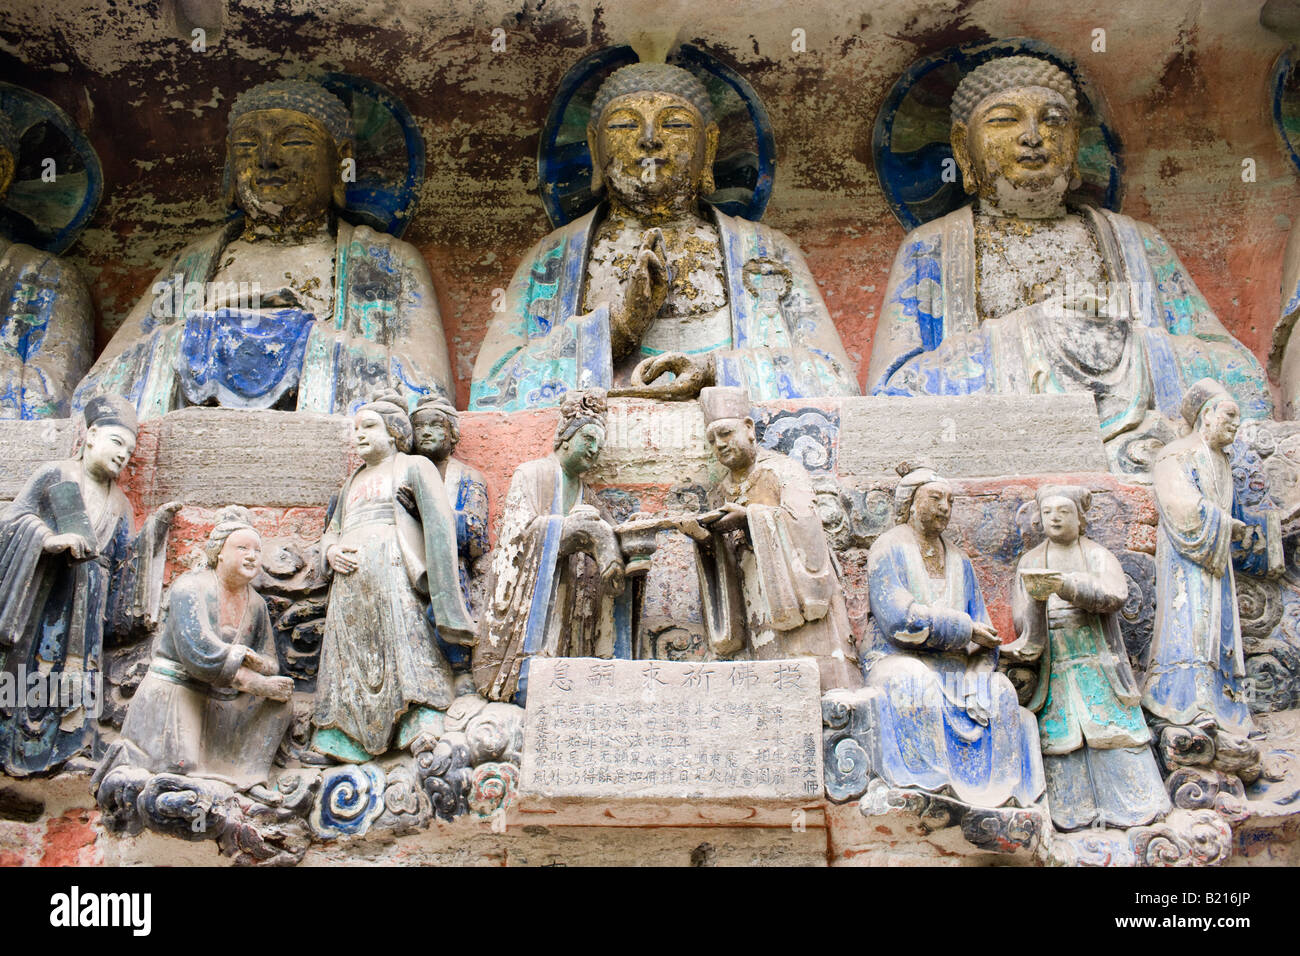 Sculptures rupestres de Dazu bouddhas et scène religieuse au Mont Baoding Chongqing Chine Banque D'Images